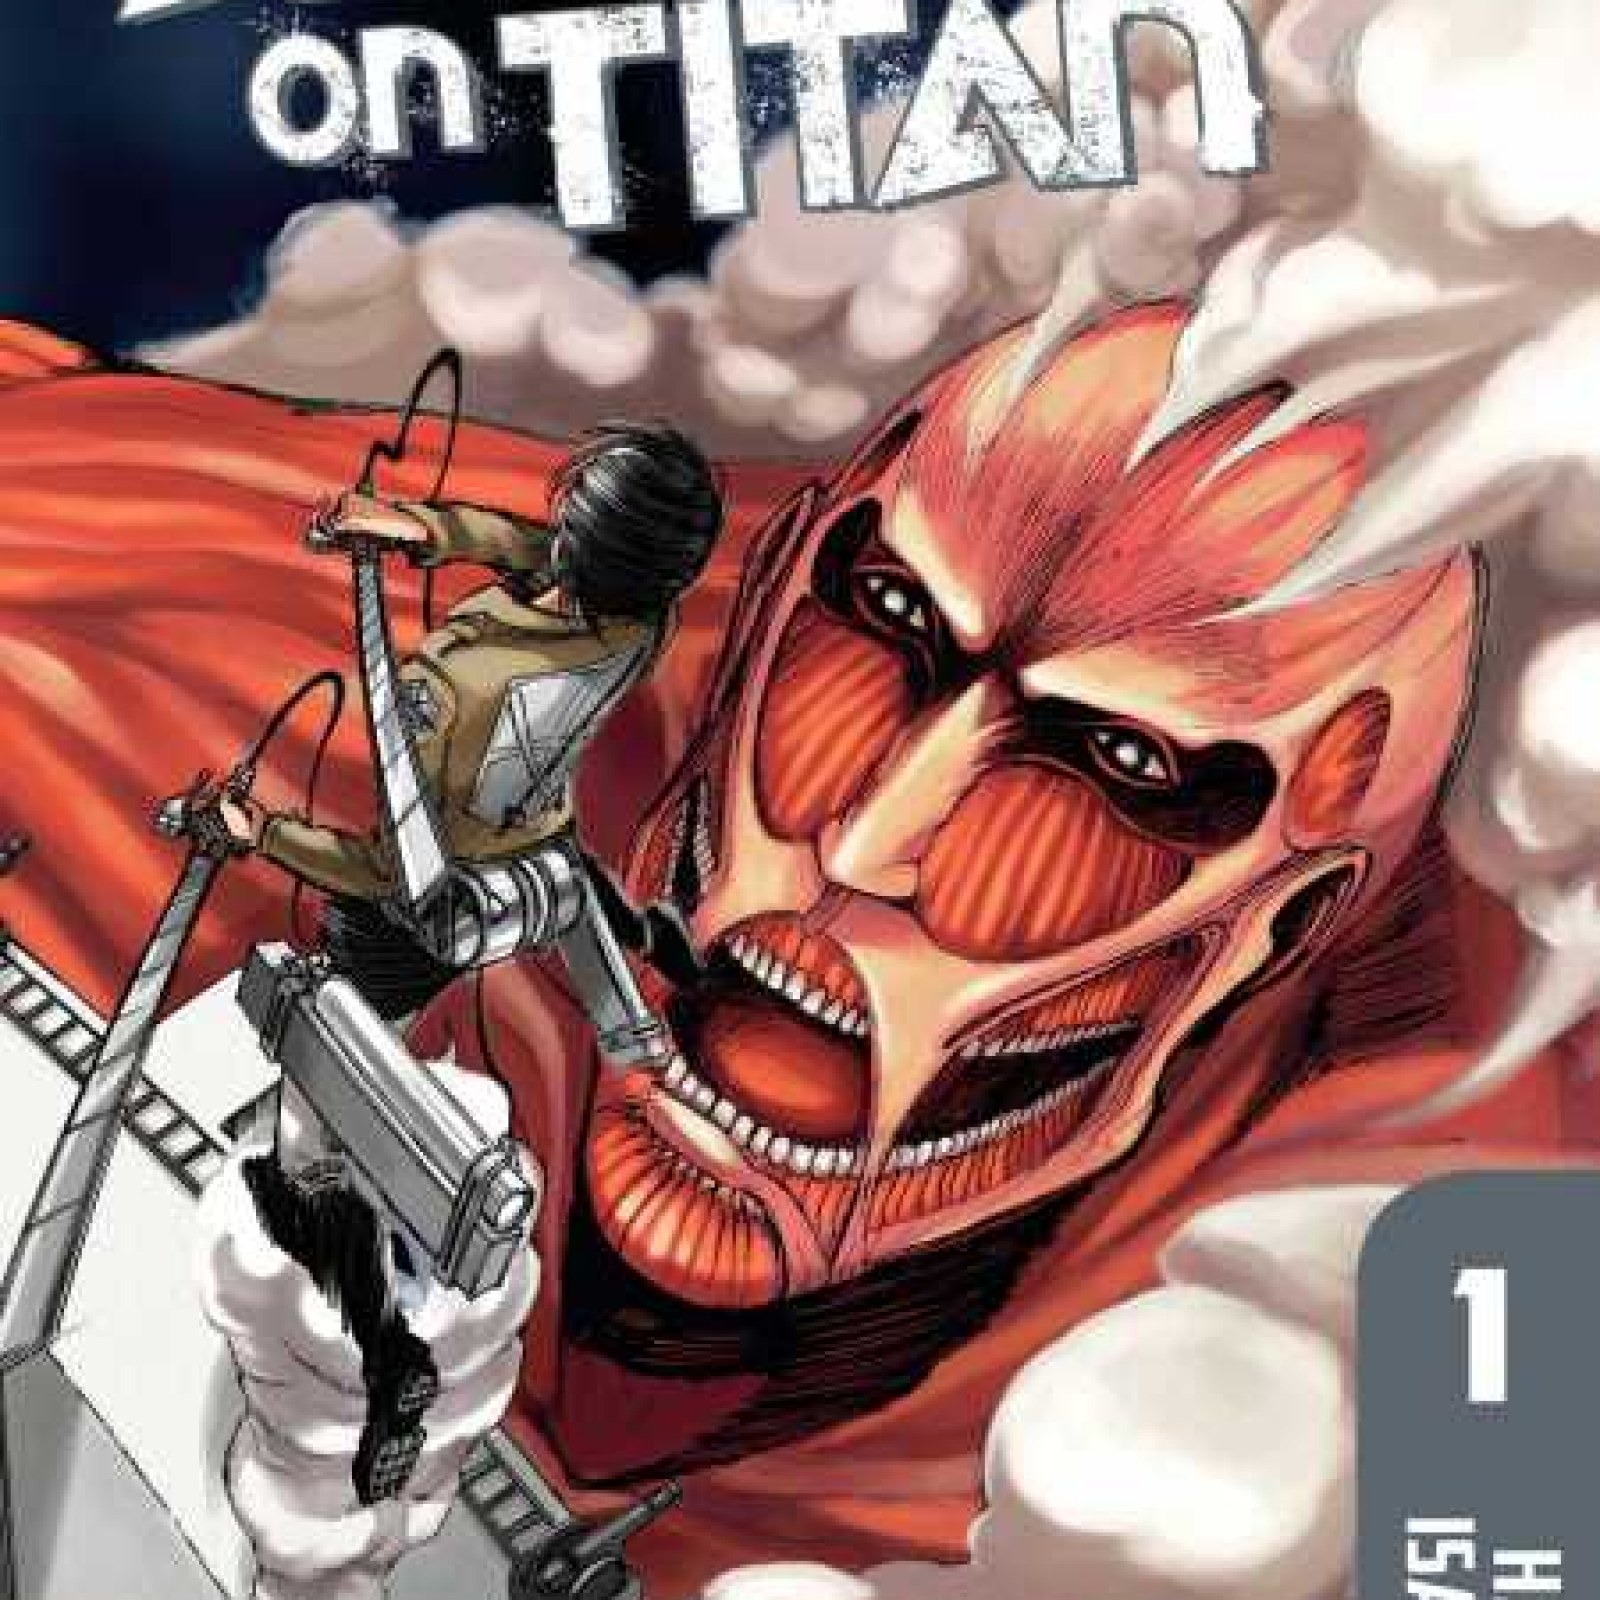 Shingeki no Kyojin (Attack on Titan) Vol. 34